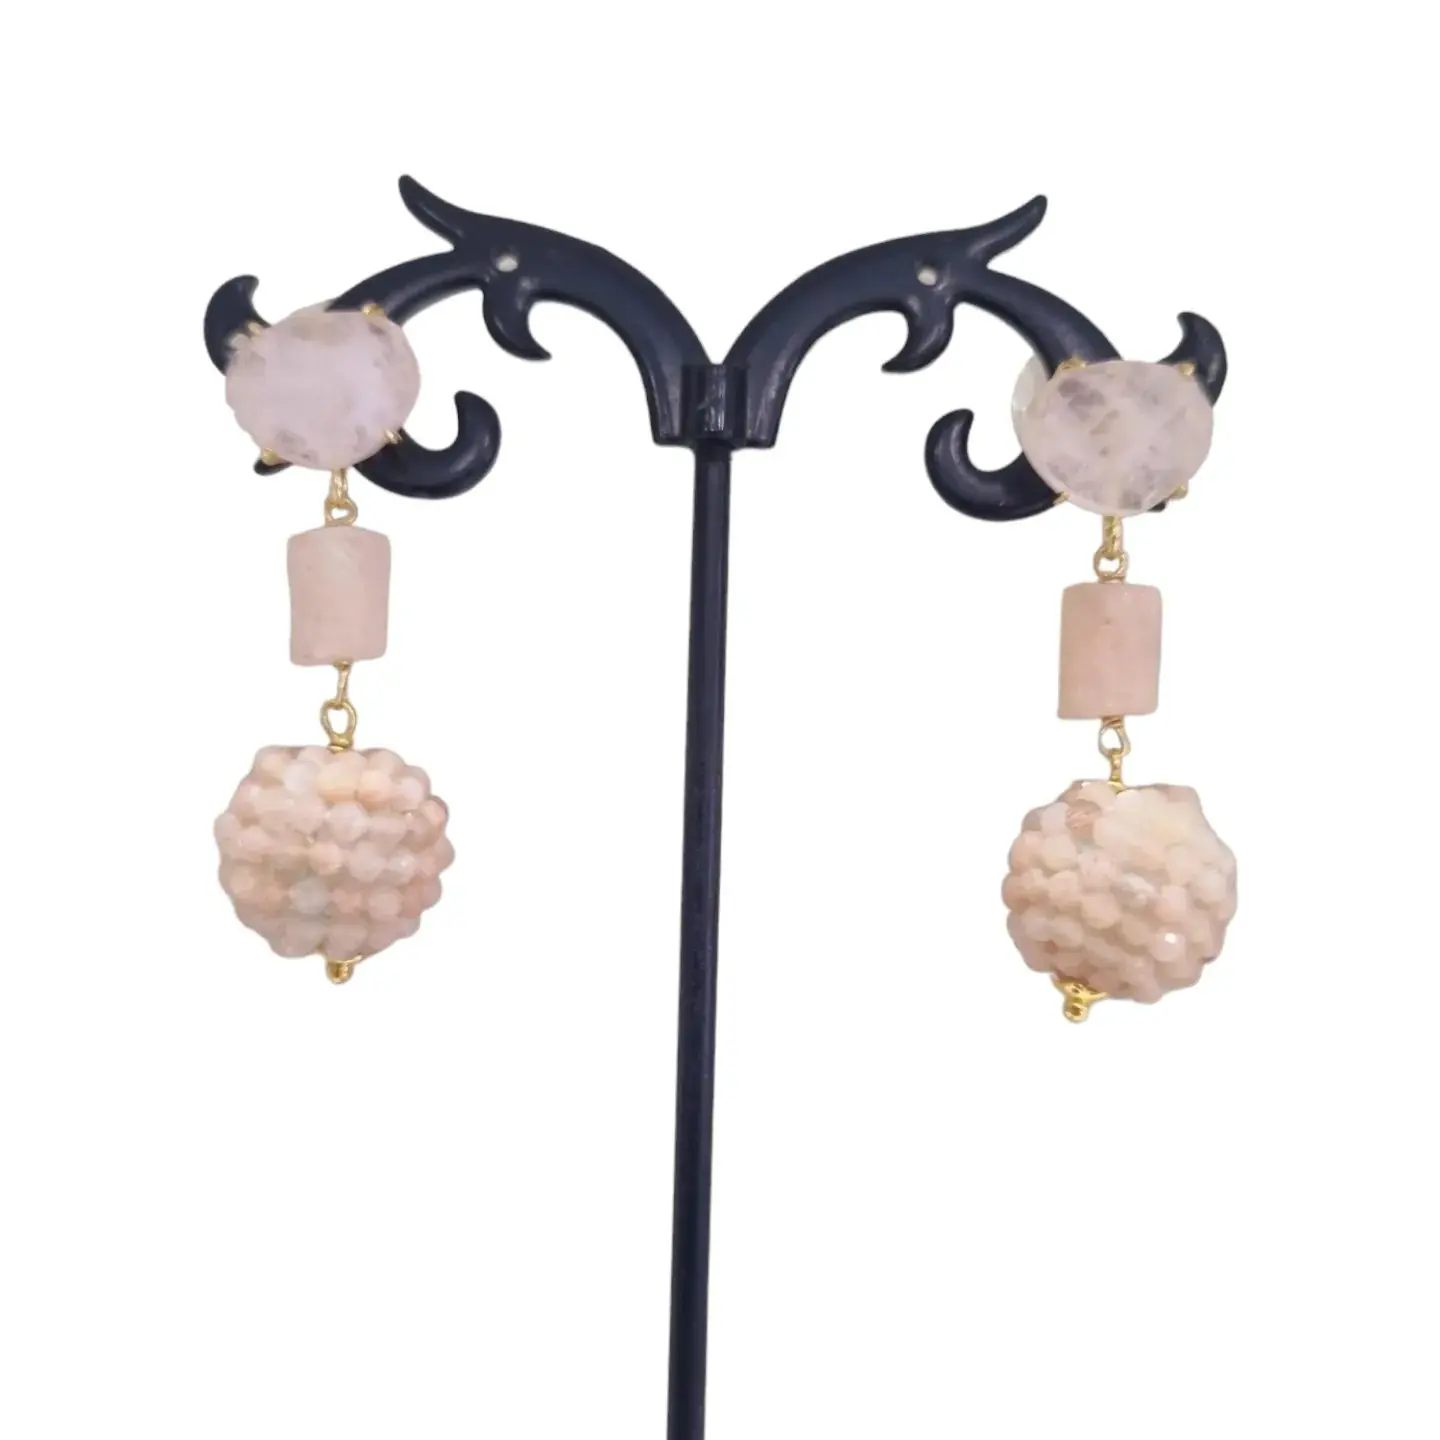 Boucles d'oreilles quartz rose et oeil de chat – Légères et confortables Poids 4,6 g Longueur 4,5 cm